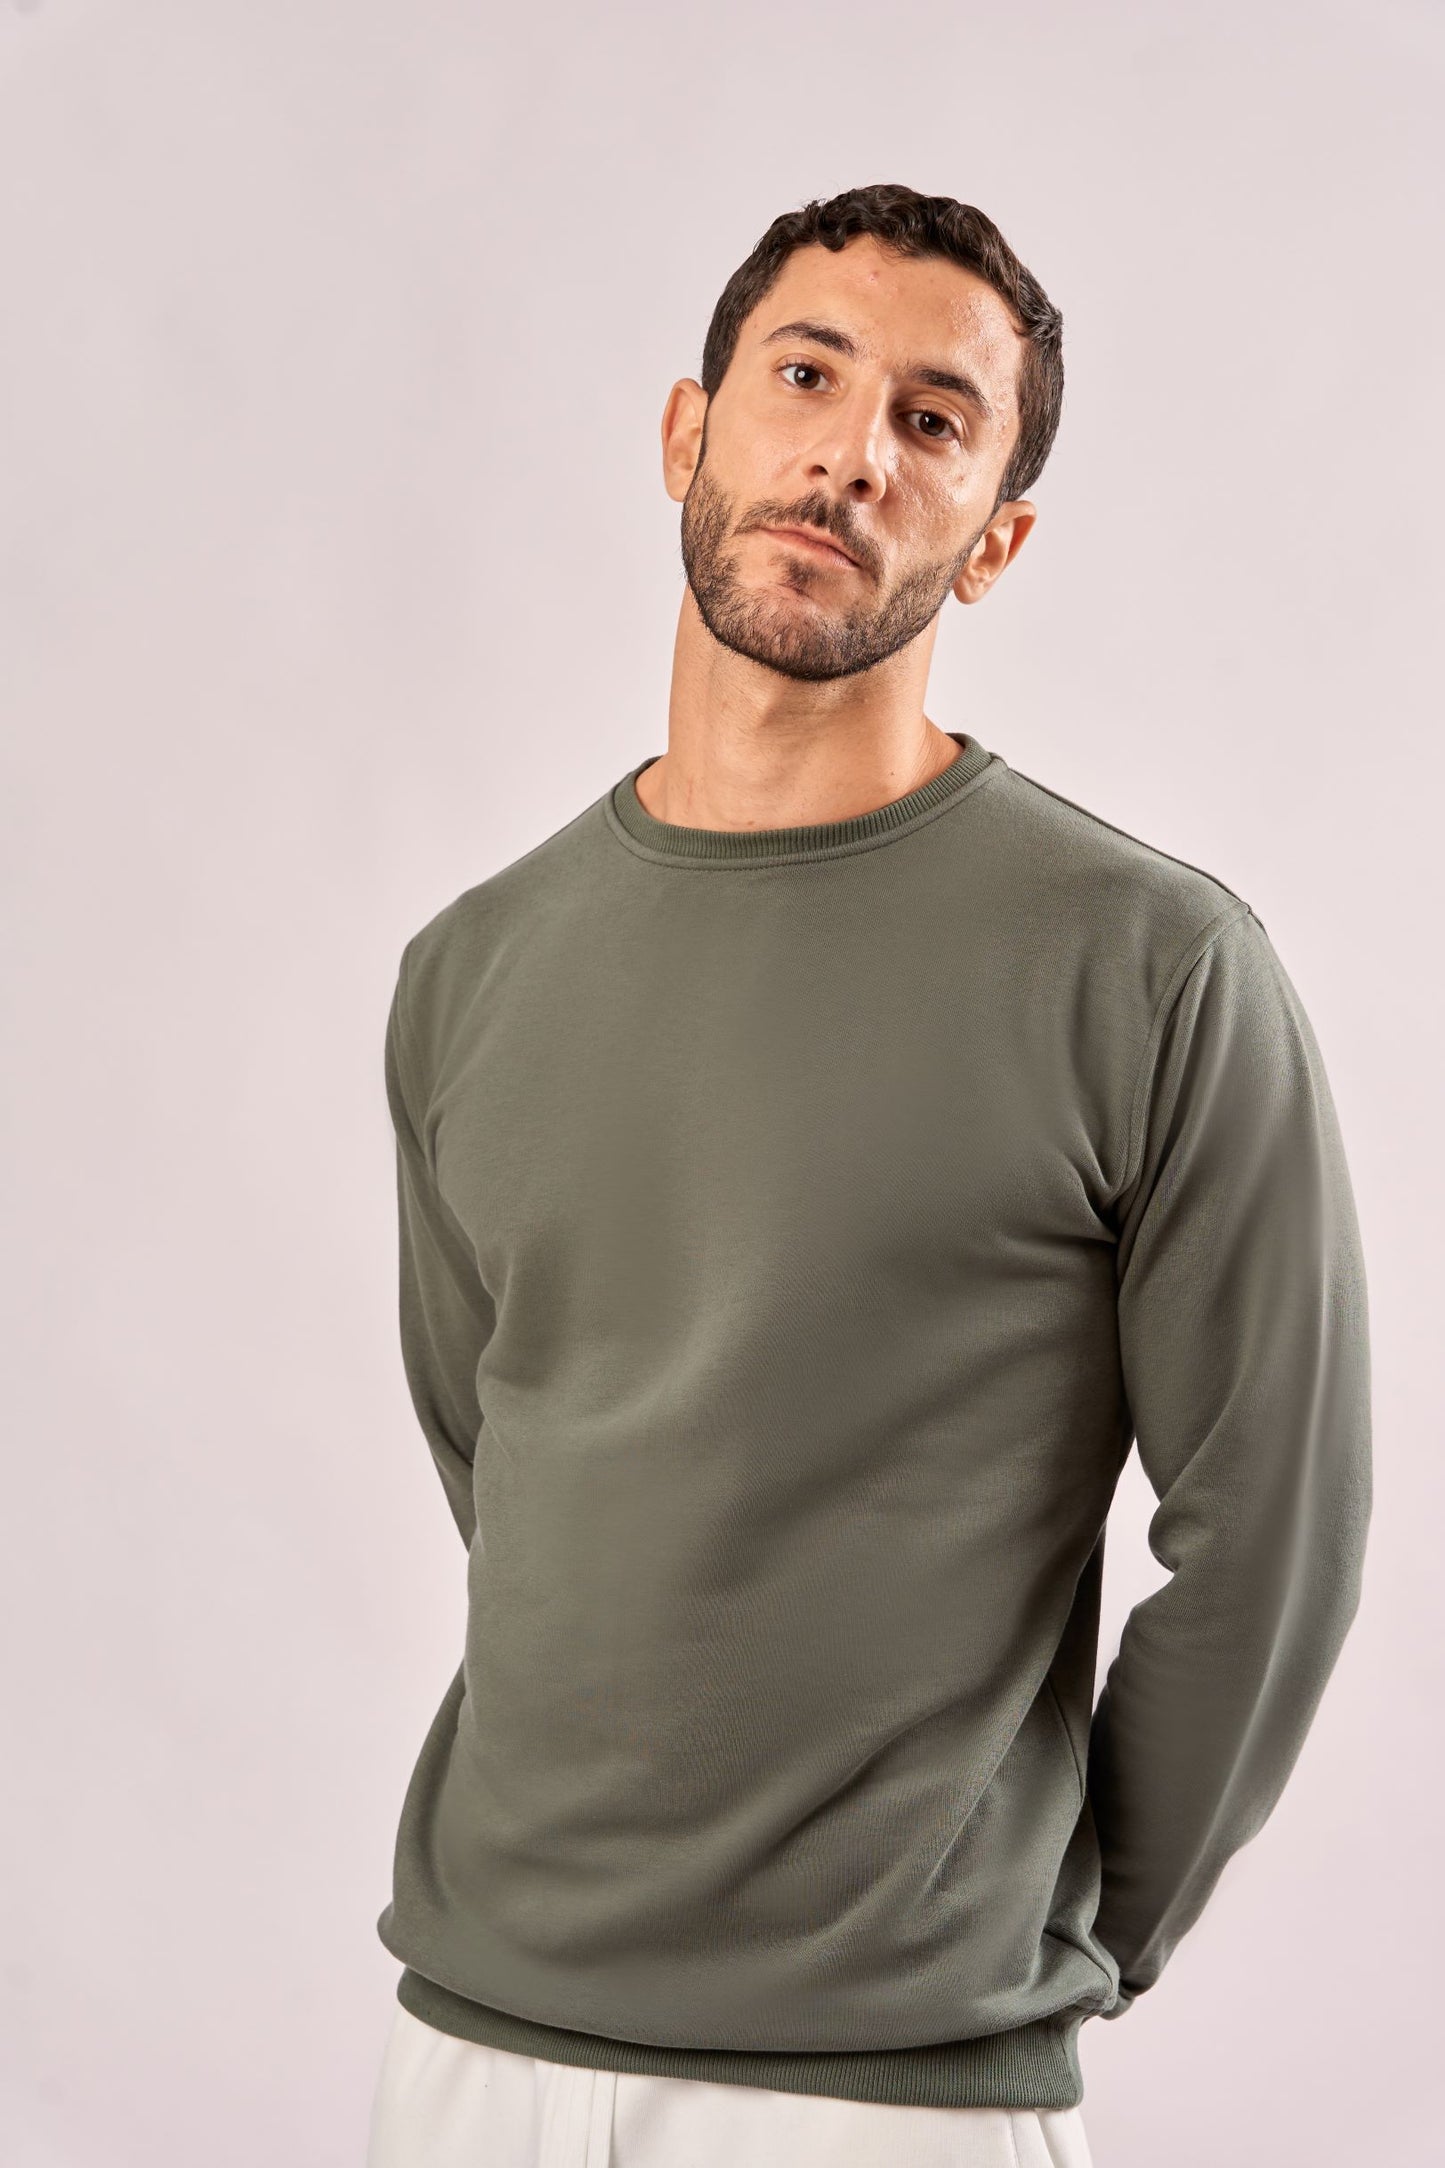 Unisex Comfy Sweatshirt